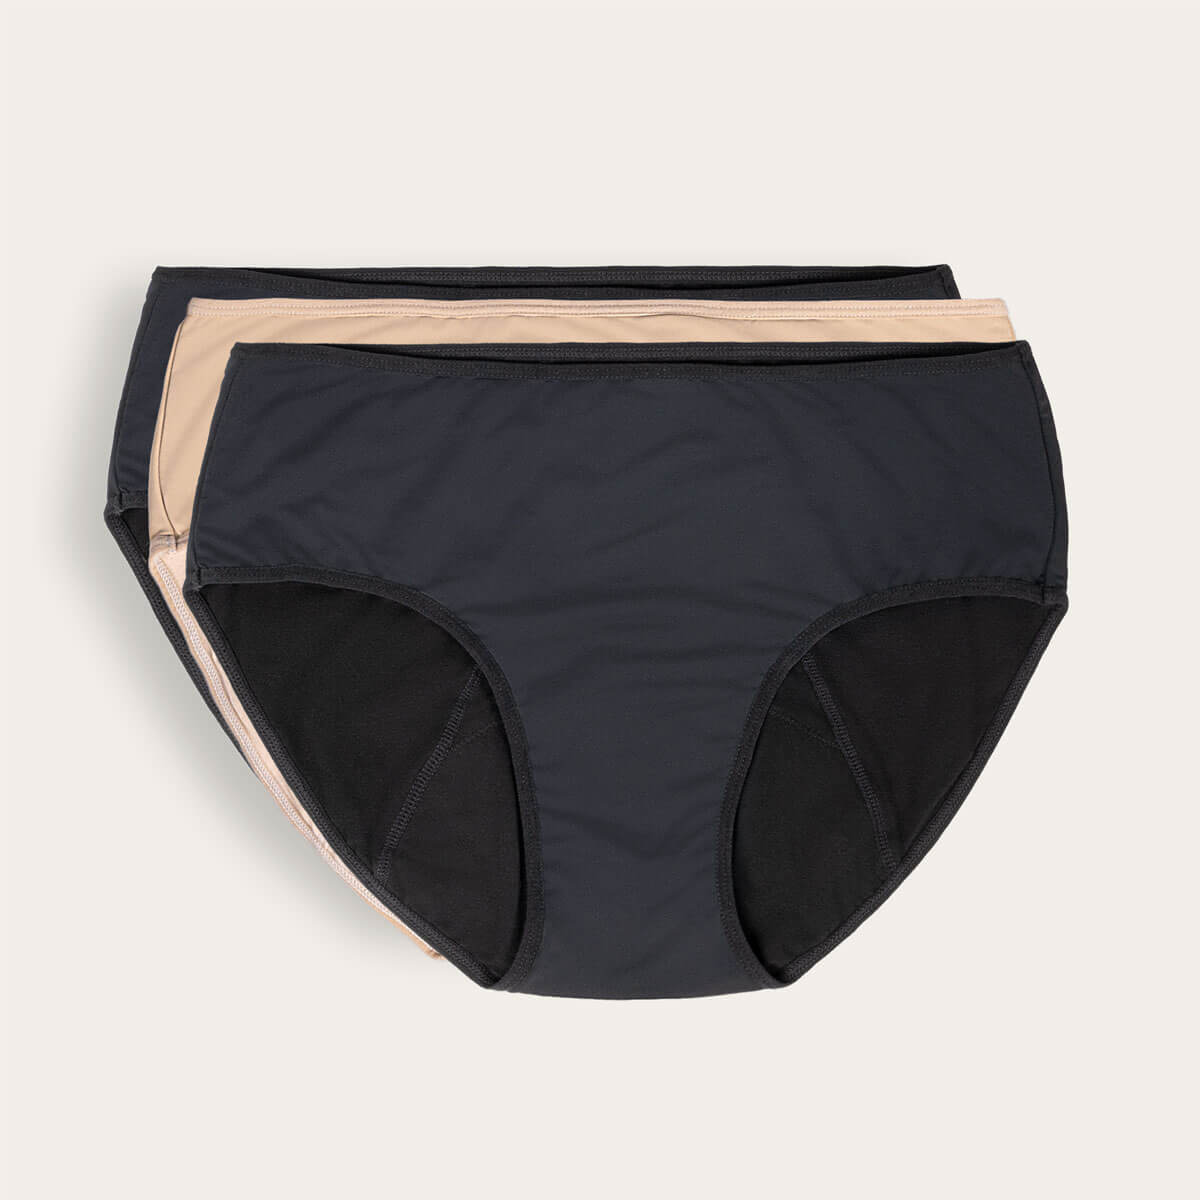 JuJu Period Underwear - Bikini Moderate Flow – Flora & Fauna